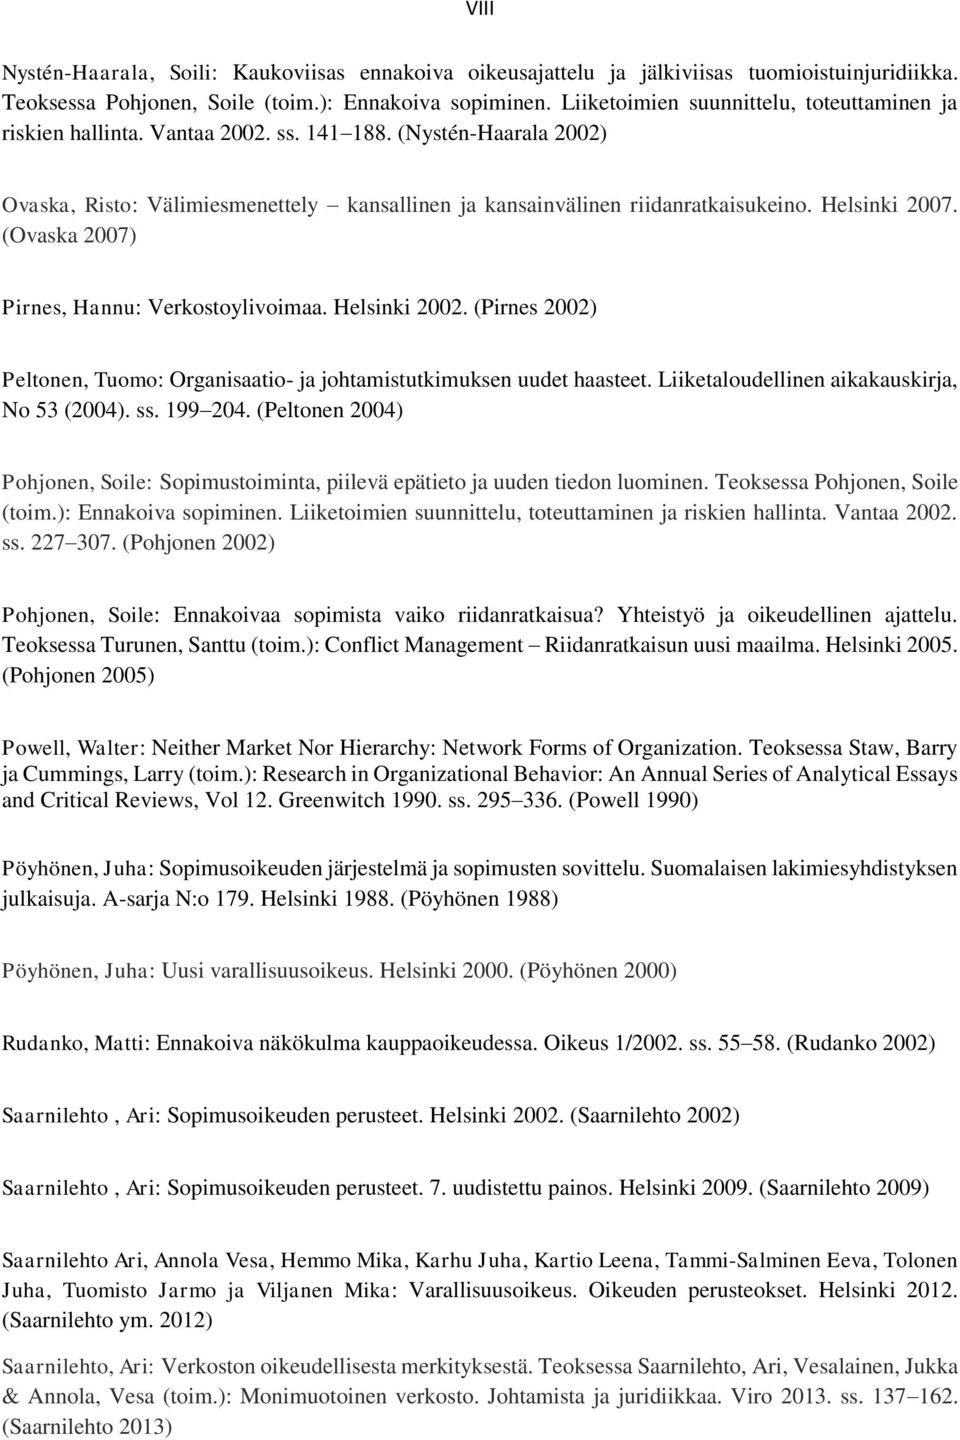 Helsinki 2007. (Ovaska 2007) Pirnes, Hannu: Verkostoylivoimaa. Helsinki 2002. (Pirnes 2002) Peltonen, Tuomo: Organisaatio- ja johtamistutkimuksen uudet haasteet.